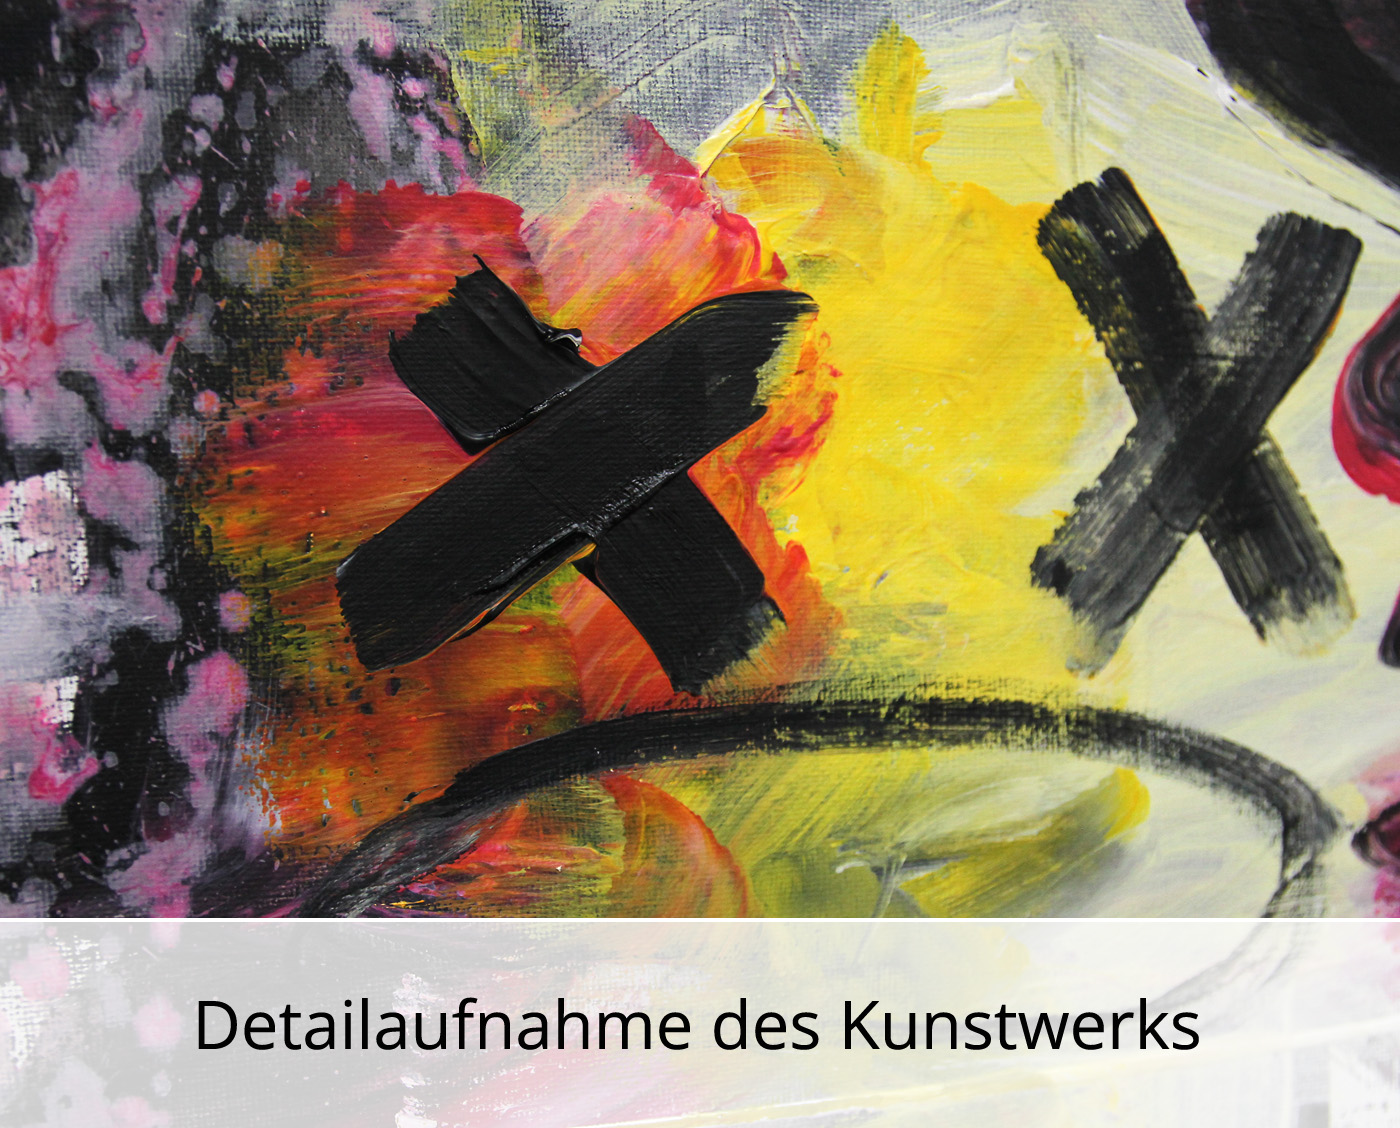 M. Cieśla: "Inspired by Music - Die Antwoord", Original/Unikat, Expressionistisches Ölgemälde (A)